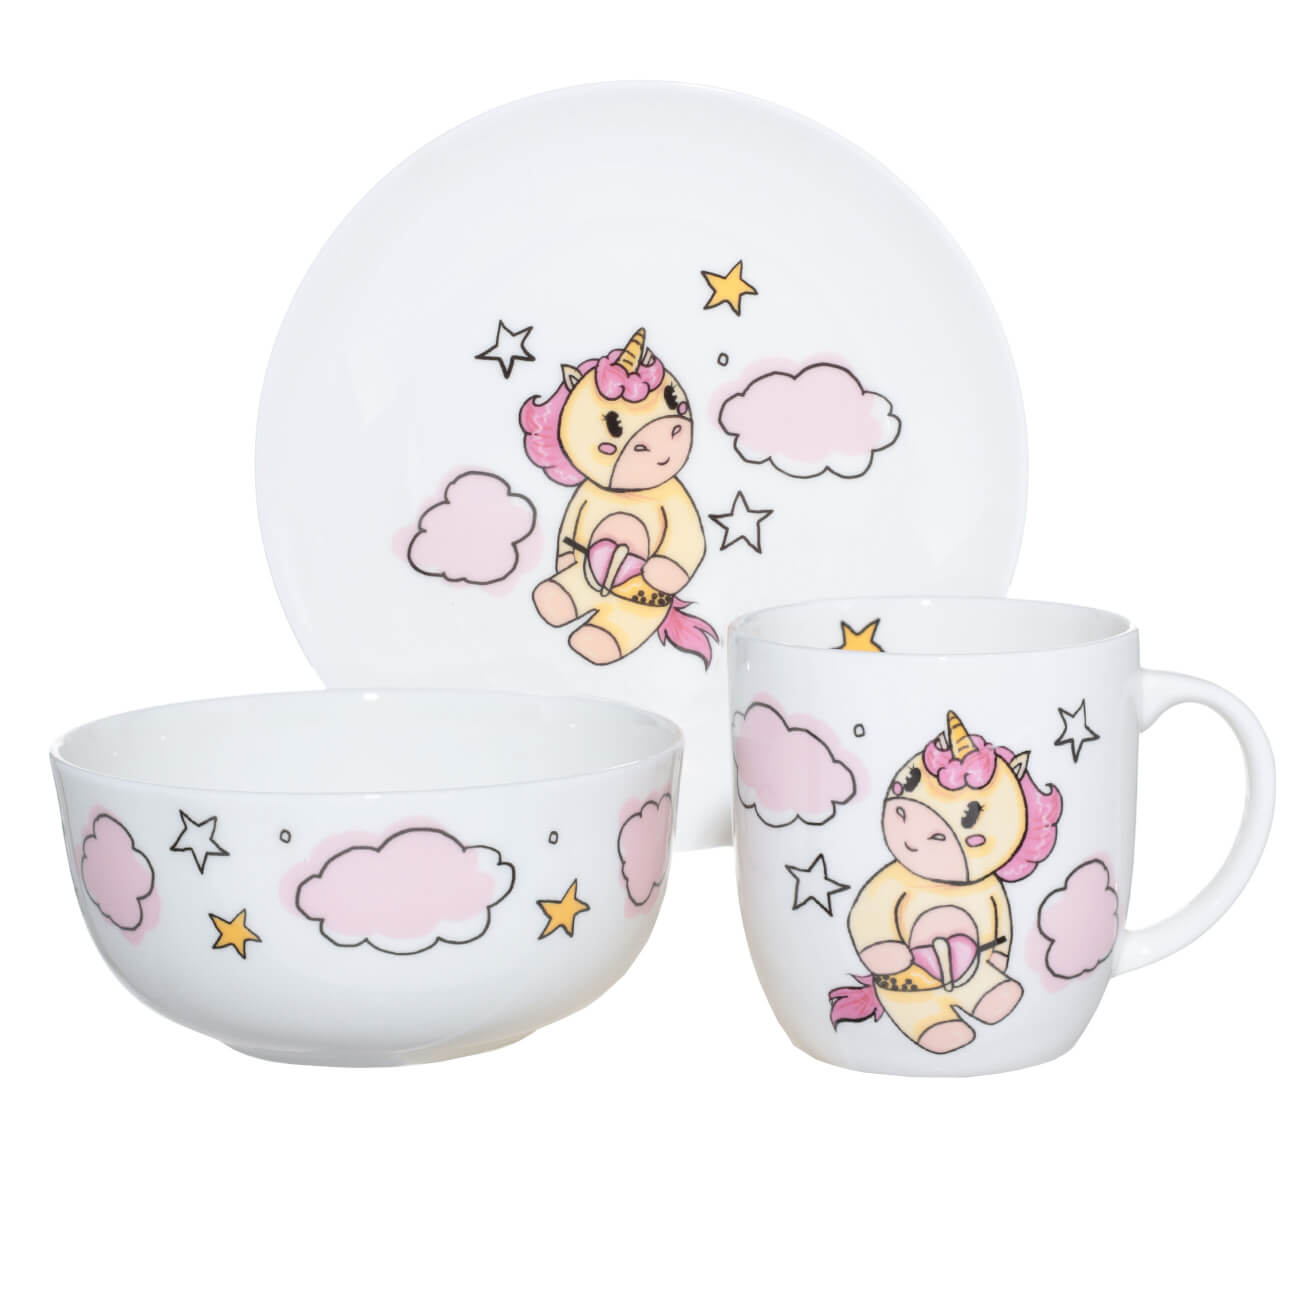 Набор посуды, детский, 3 пр, фарфор F, бело-розовый, Единорог в облаках, Unicorn набор посуды детский 3 пр фарфор f бело розовый единорог в облаках unicorn